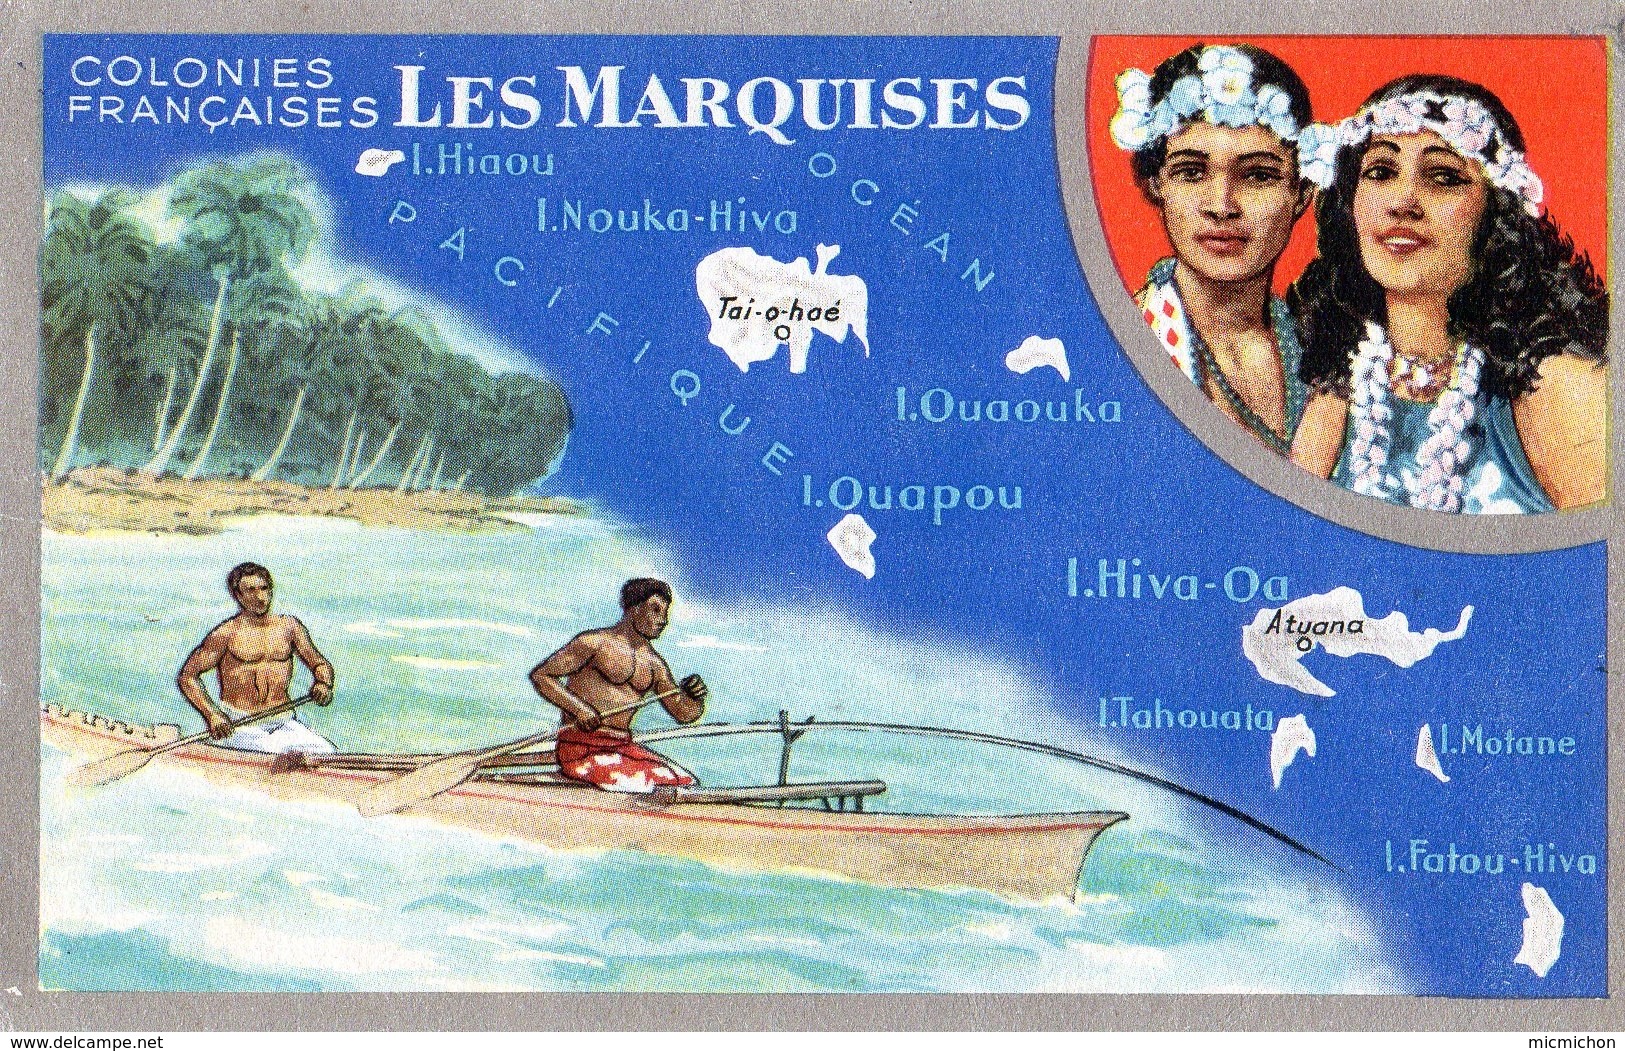 Carte LIon Noir Colonies Françaises Les MARQUISES (2) - Publicidad